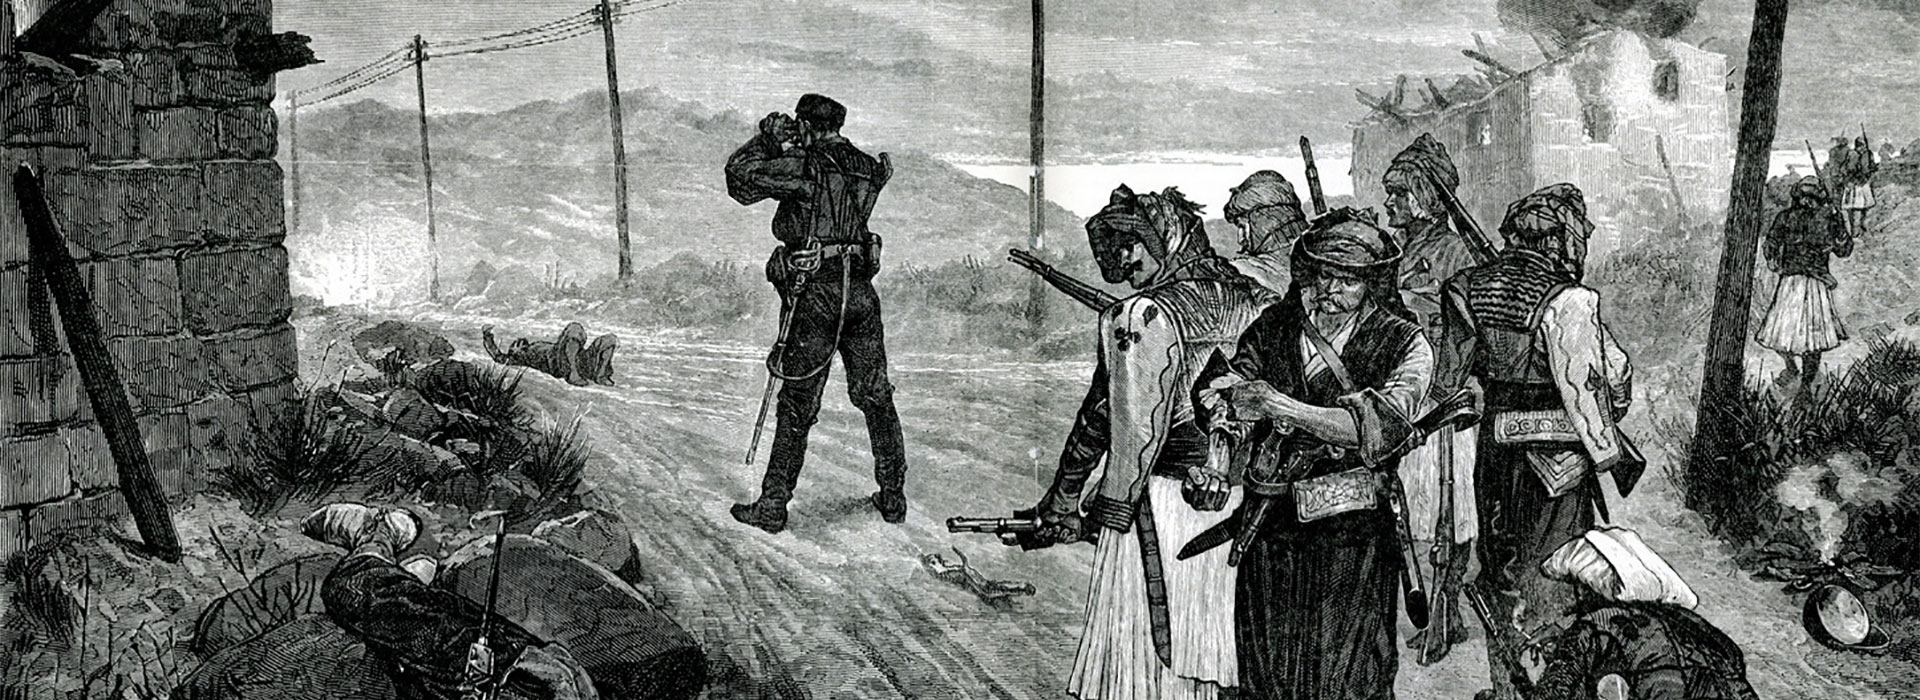 Η άγνωστη νικηφόρα επανάσταση στην Θεσσαλία το 1854 που είχε άδοξο τέλος